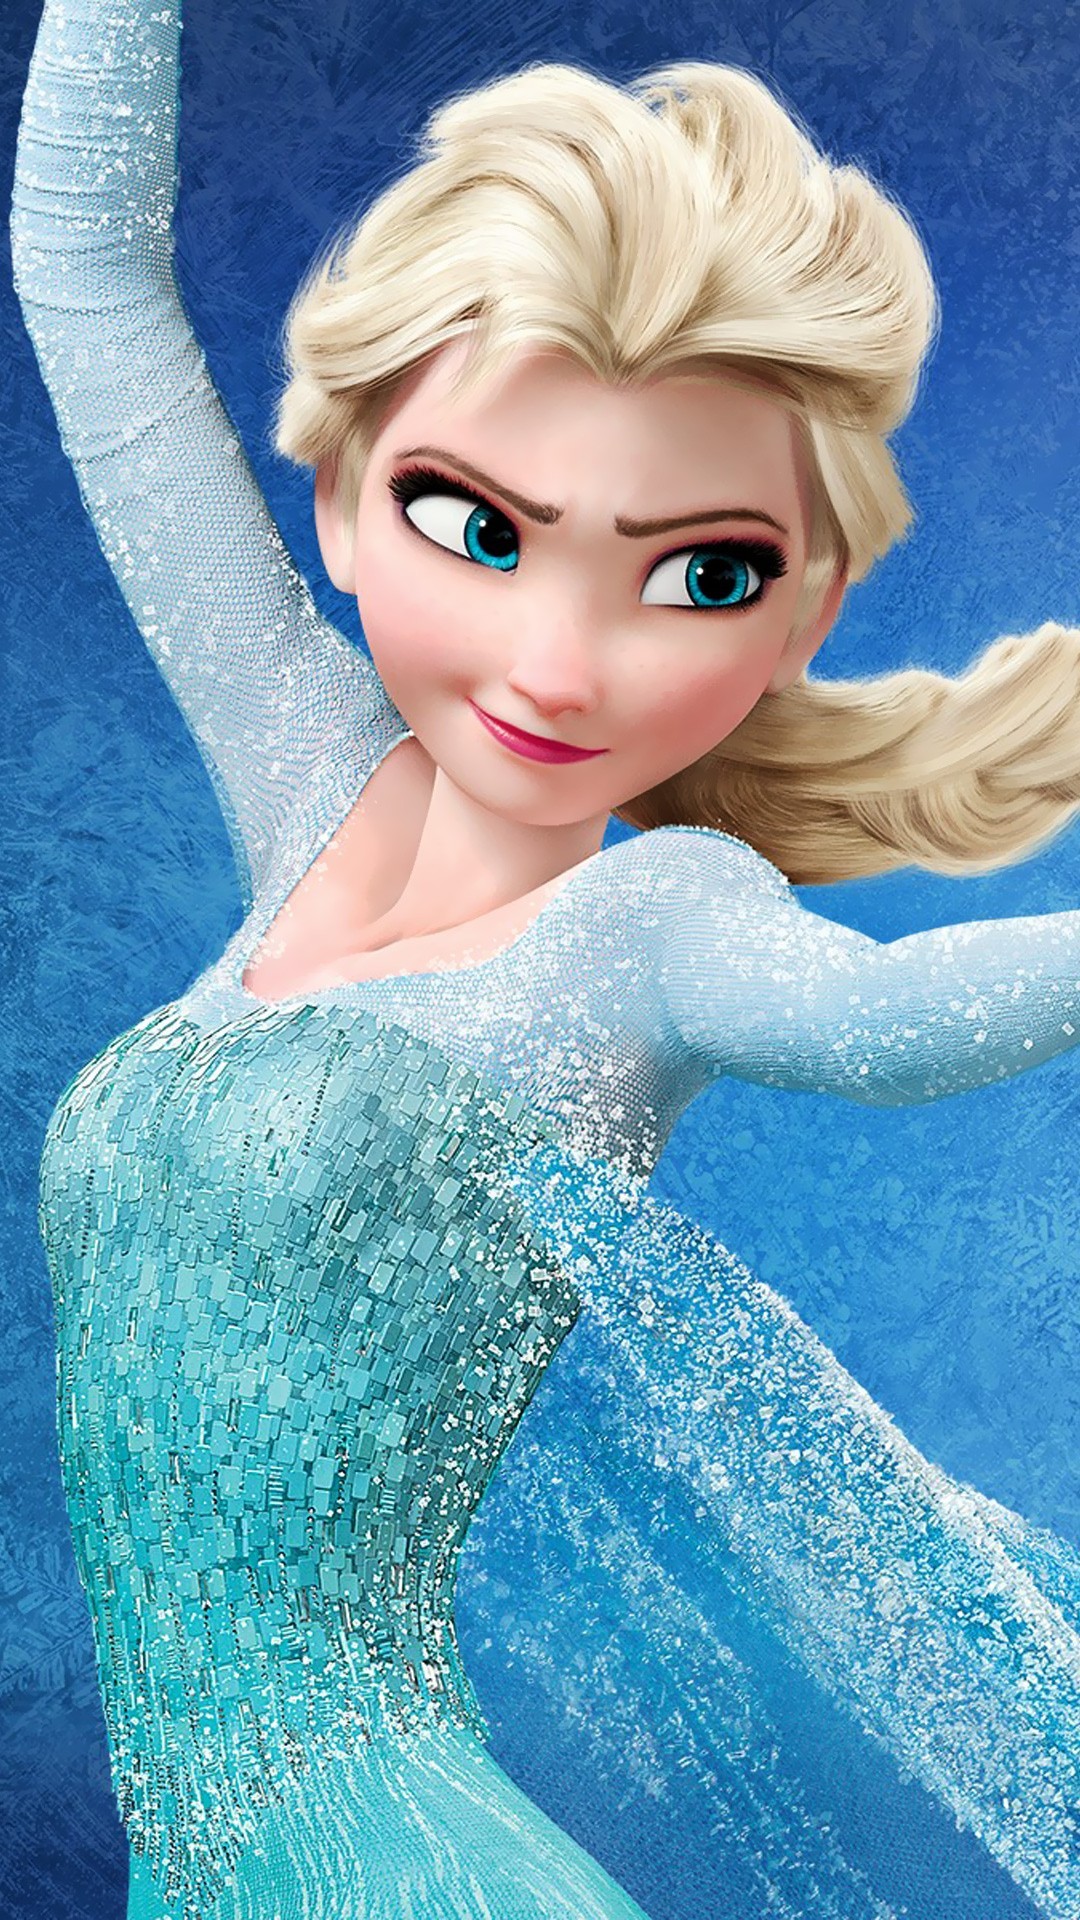 46+] Elsa Frozen Wallpaper Phone - WallpaperSafari